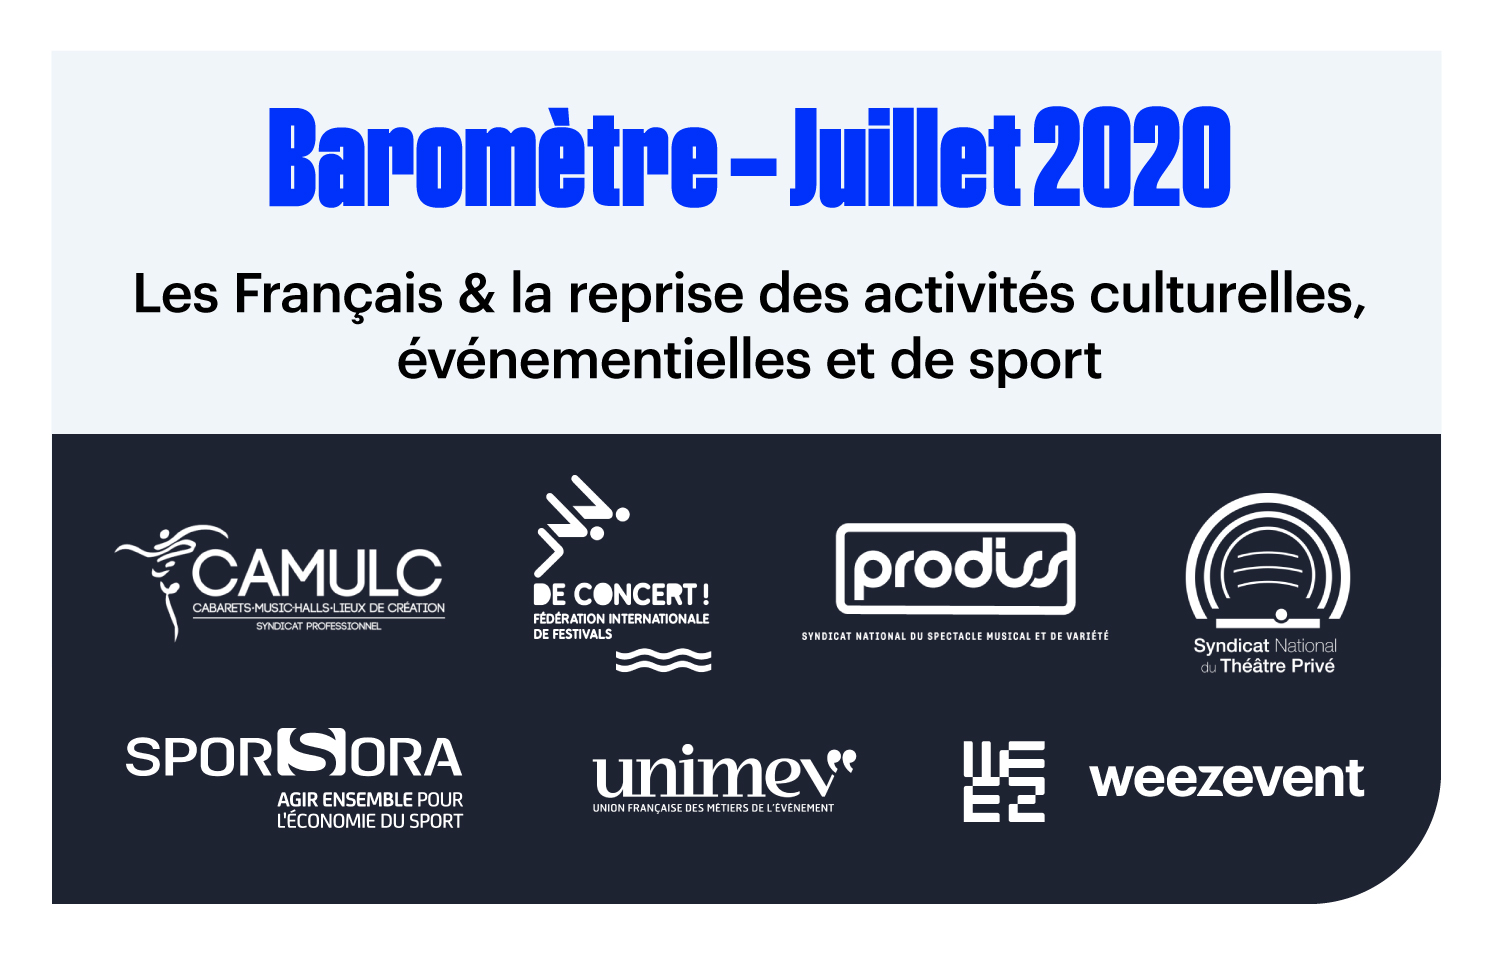 Les Français & la reprise des activités culturelles, événementielles et de sport –  Baromètre Juillet 2020